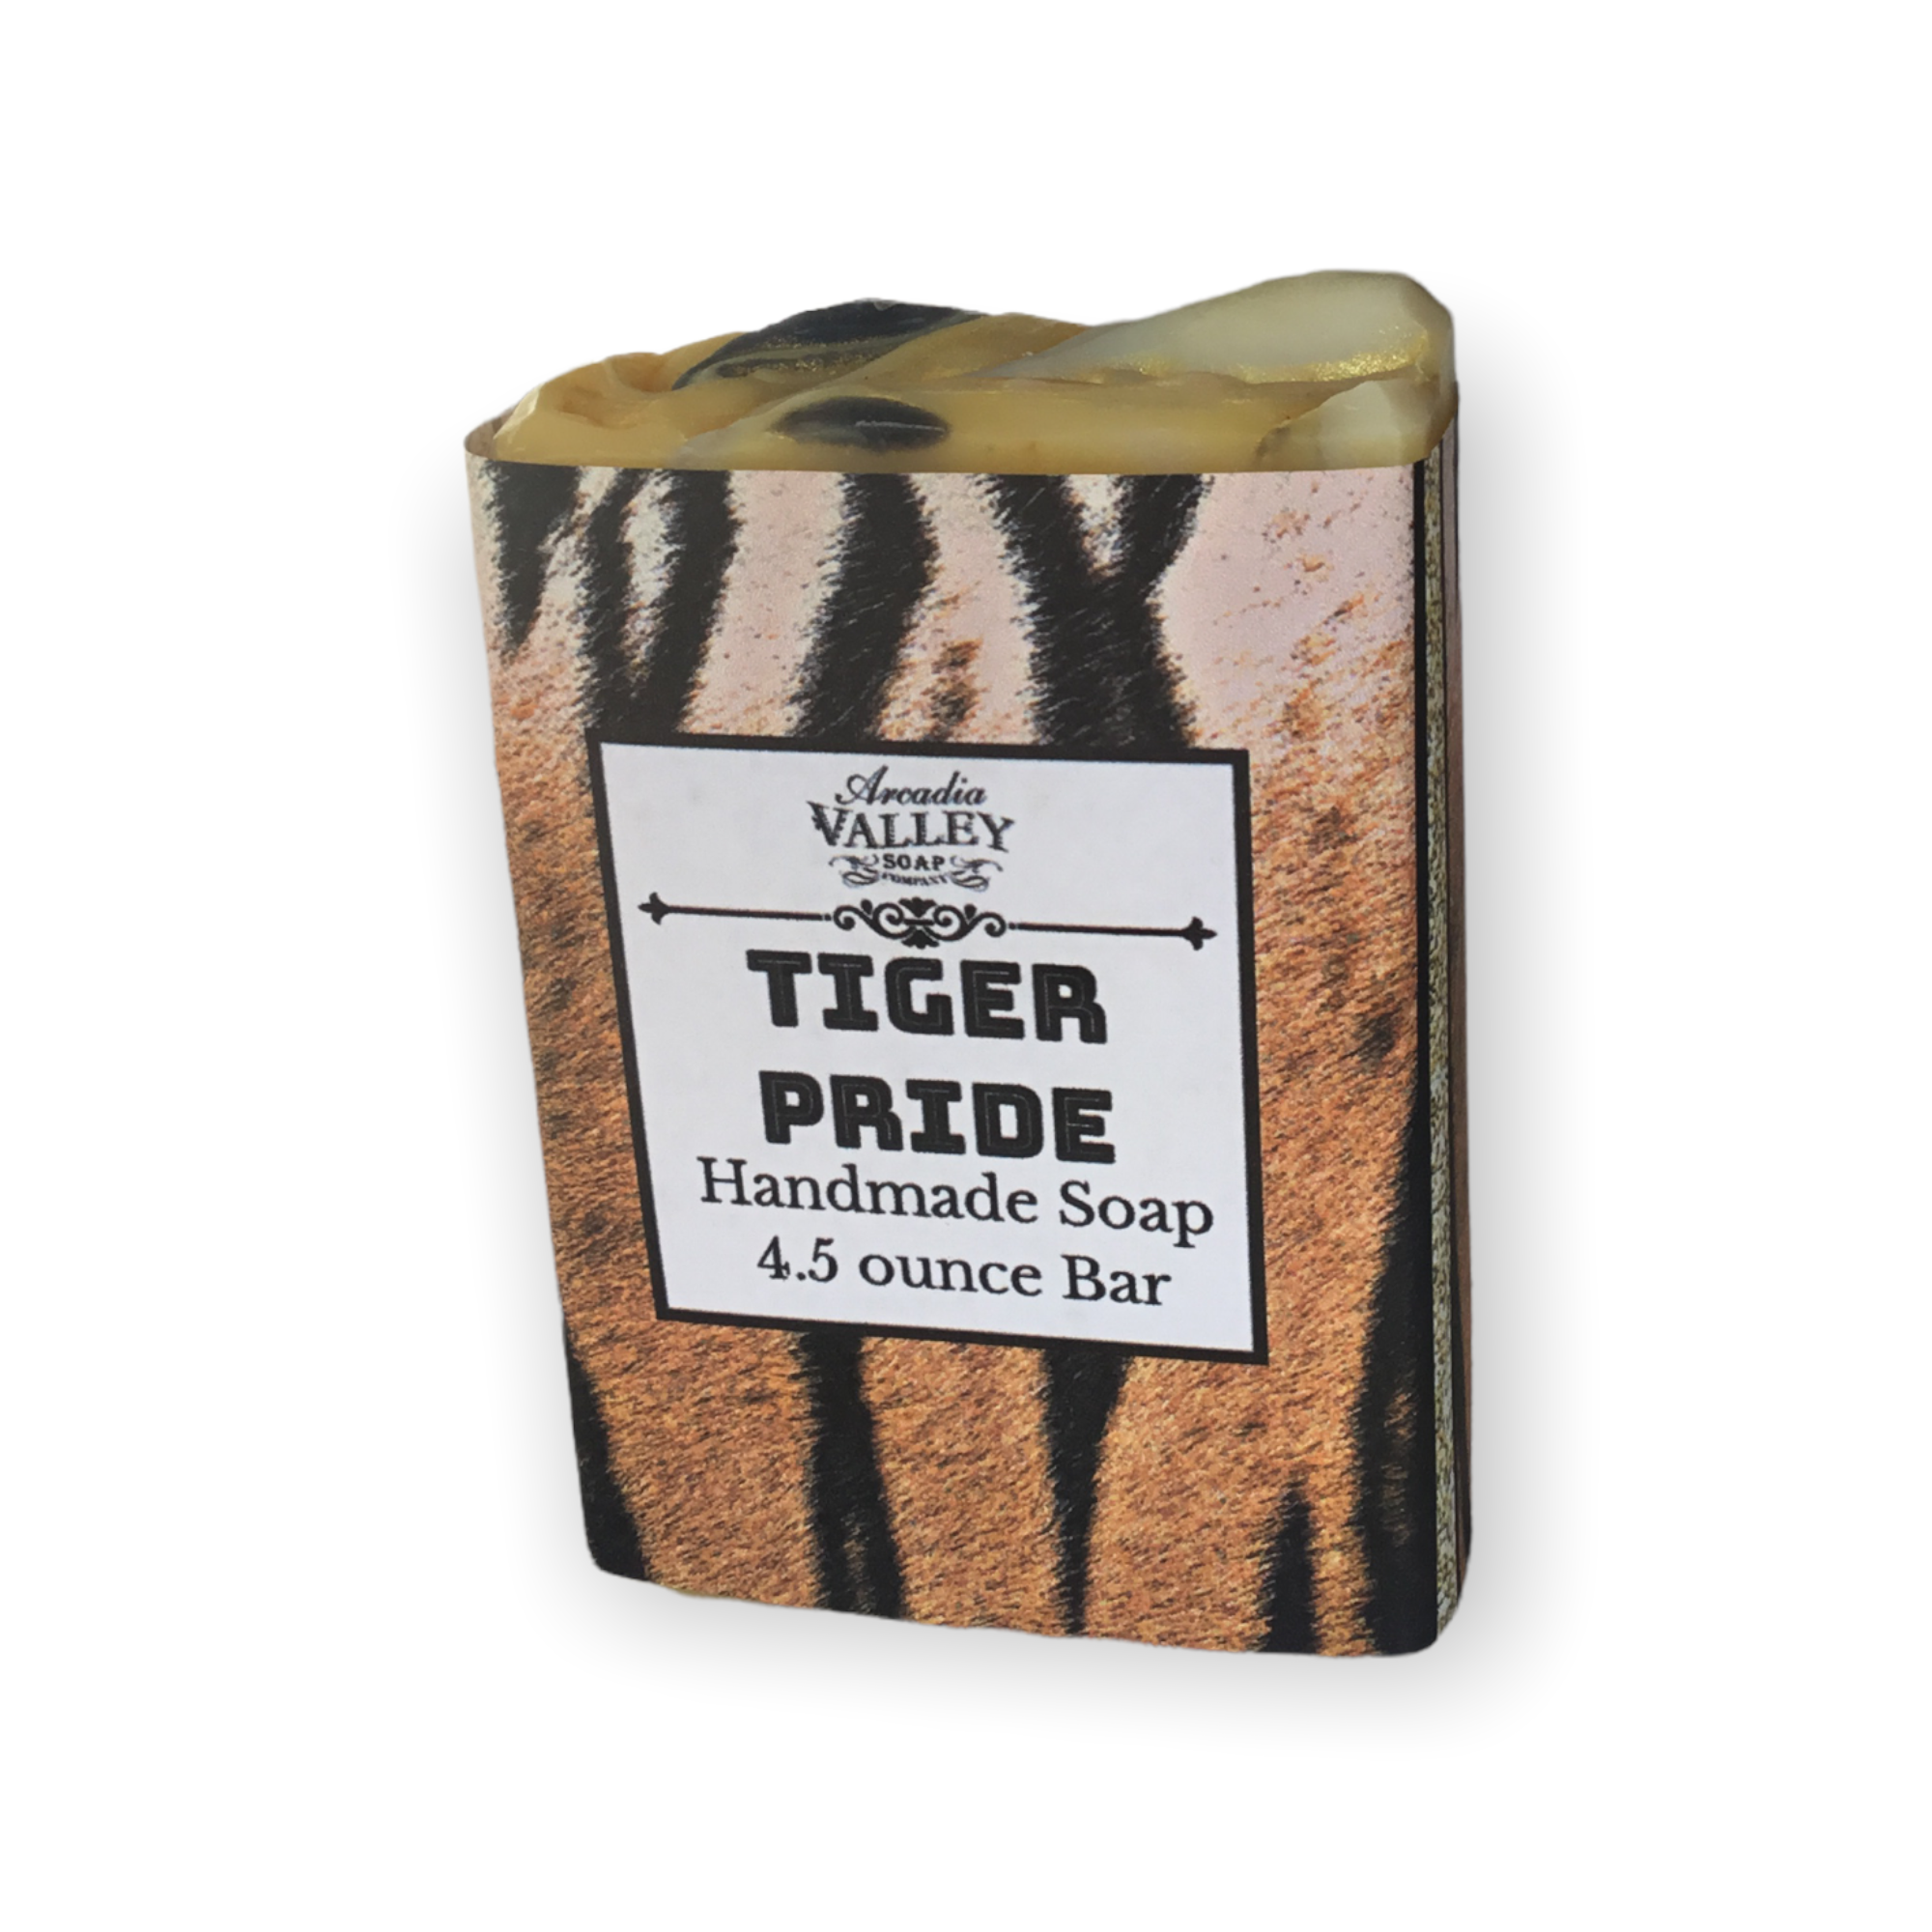 Tiger Pride Lemongrass Handmade Soap